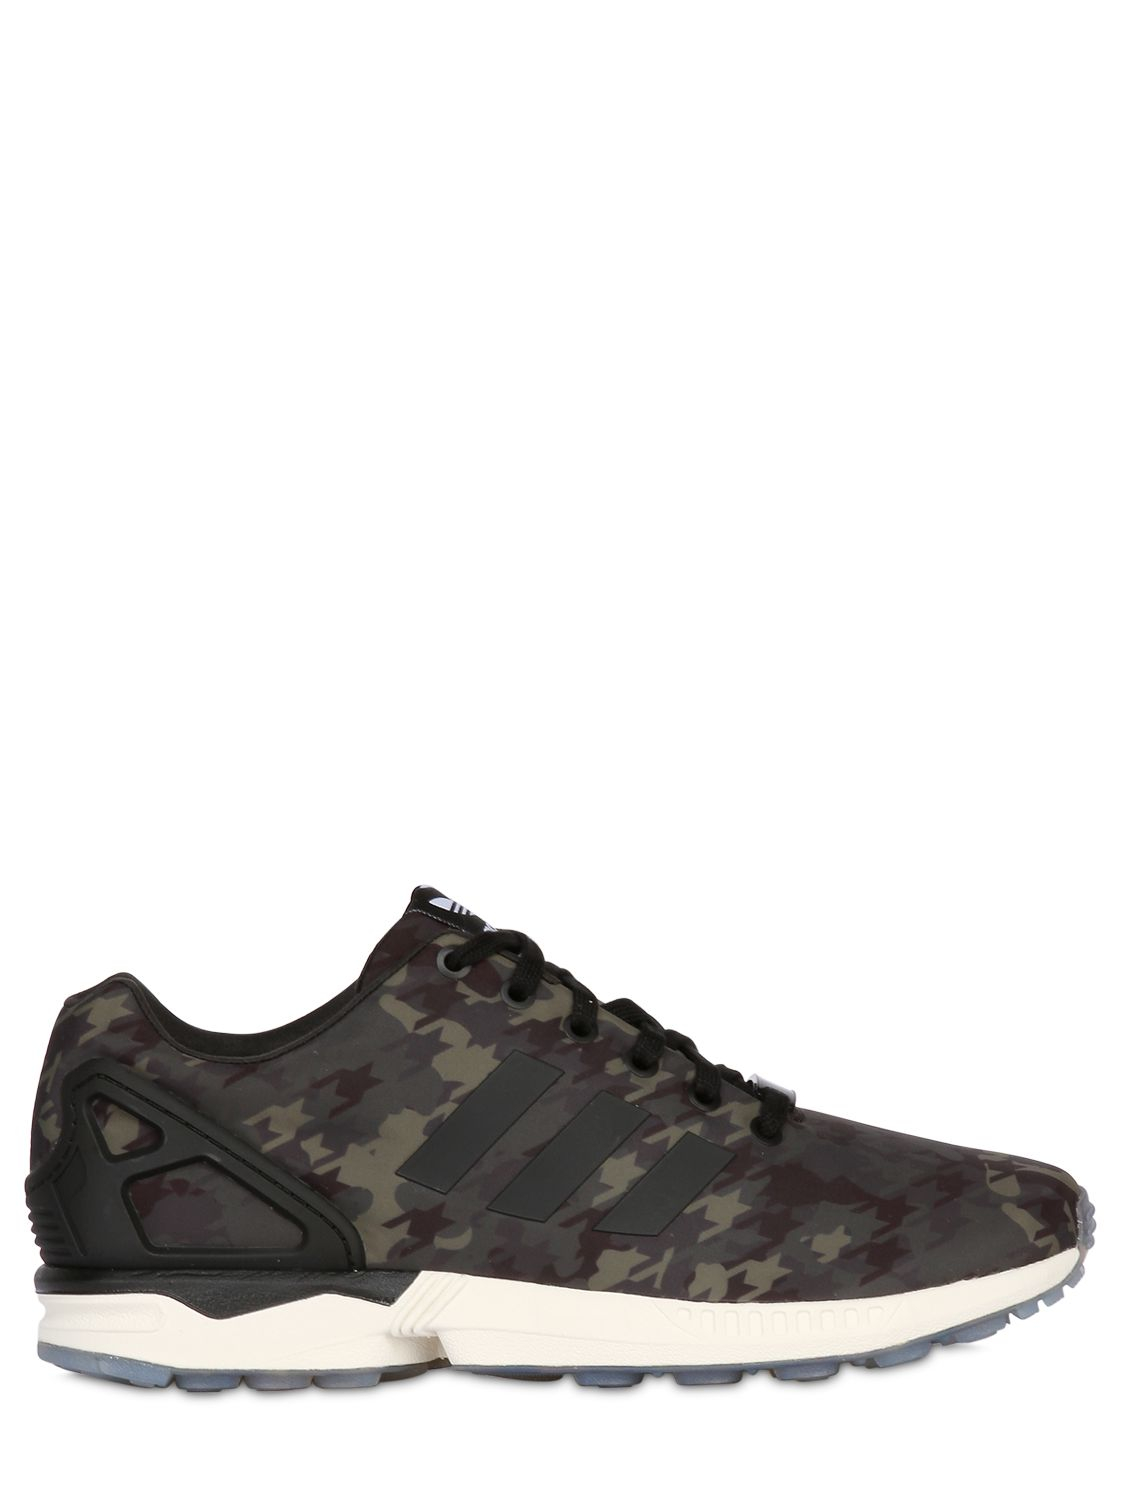 adidas Originals Zx Flux Camo 2.0 Sneakers in Grey for Men | Lyst UK